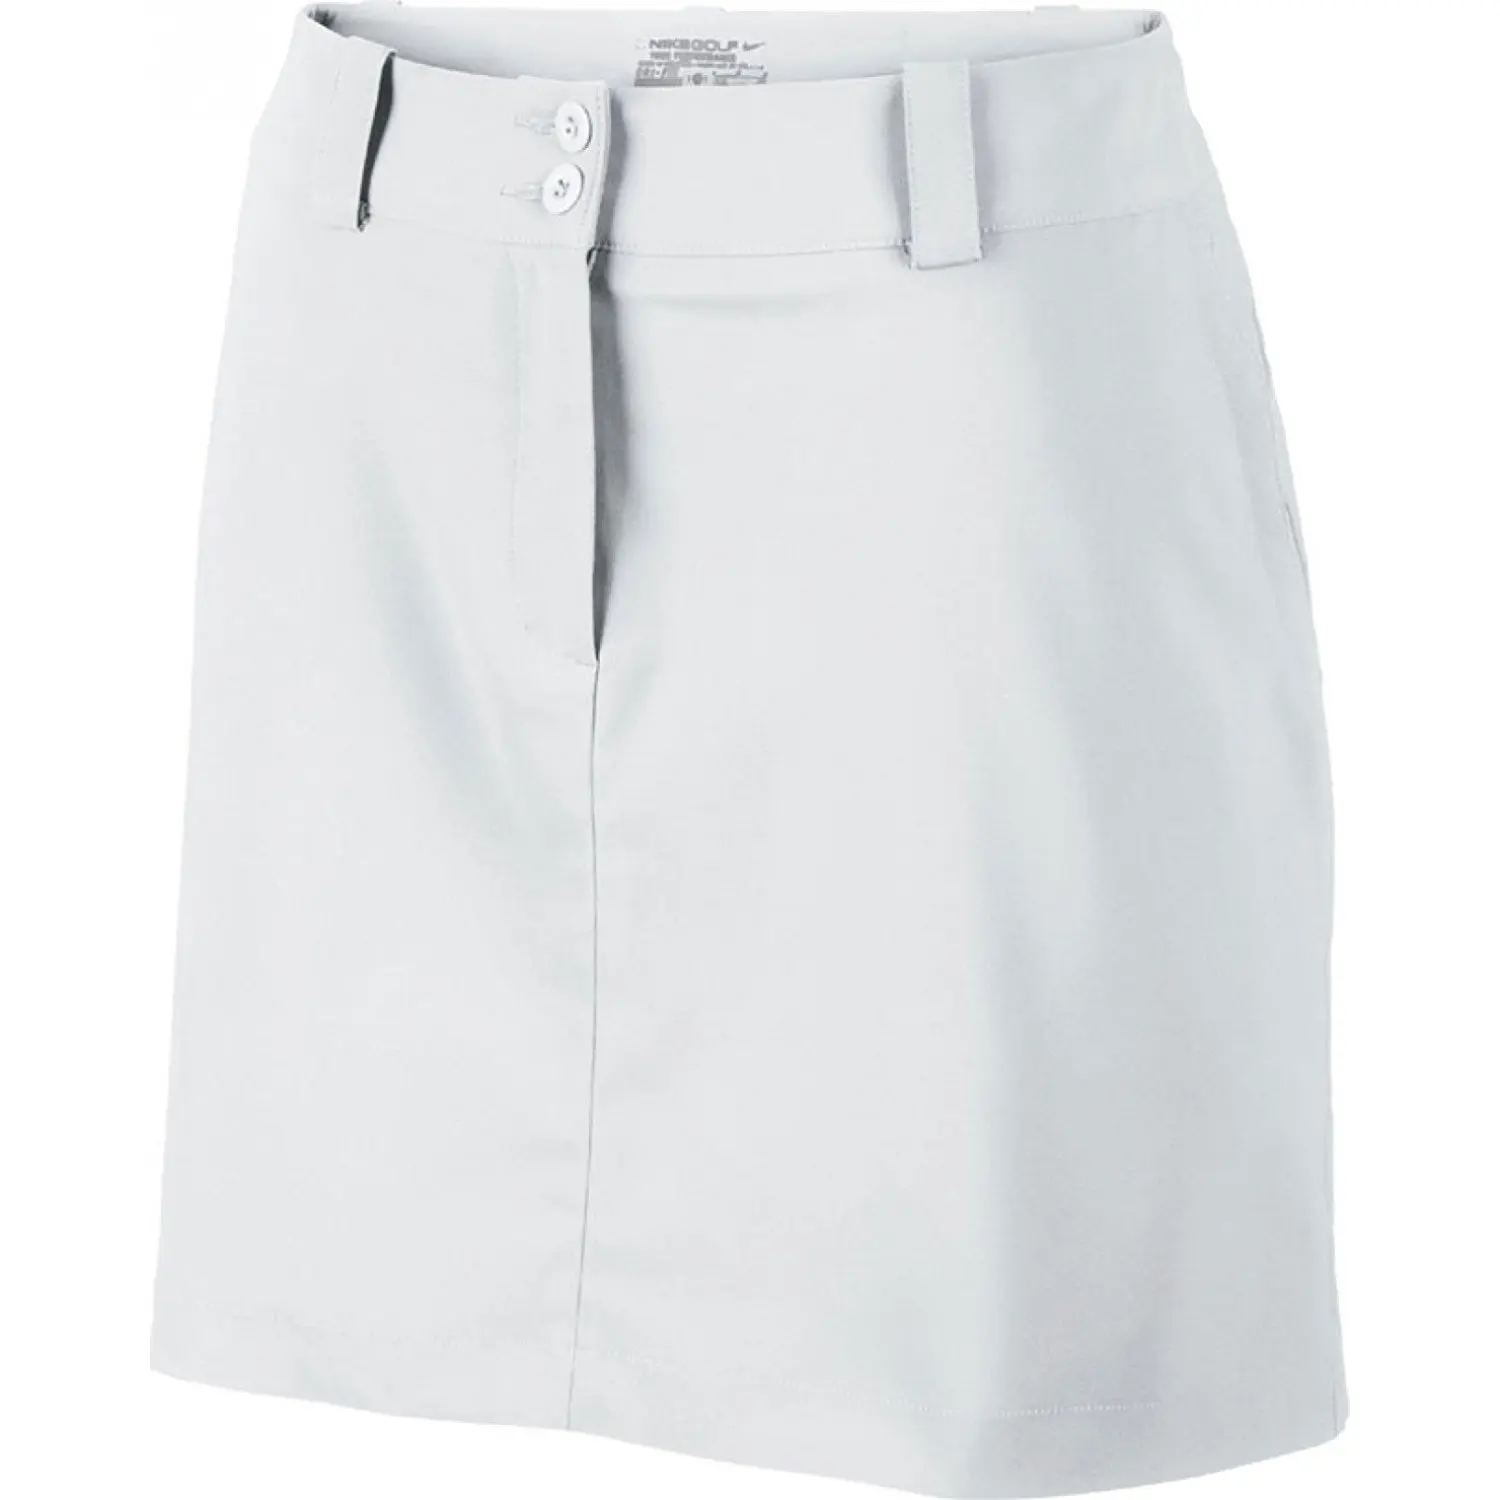 white nike golf skirt